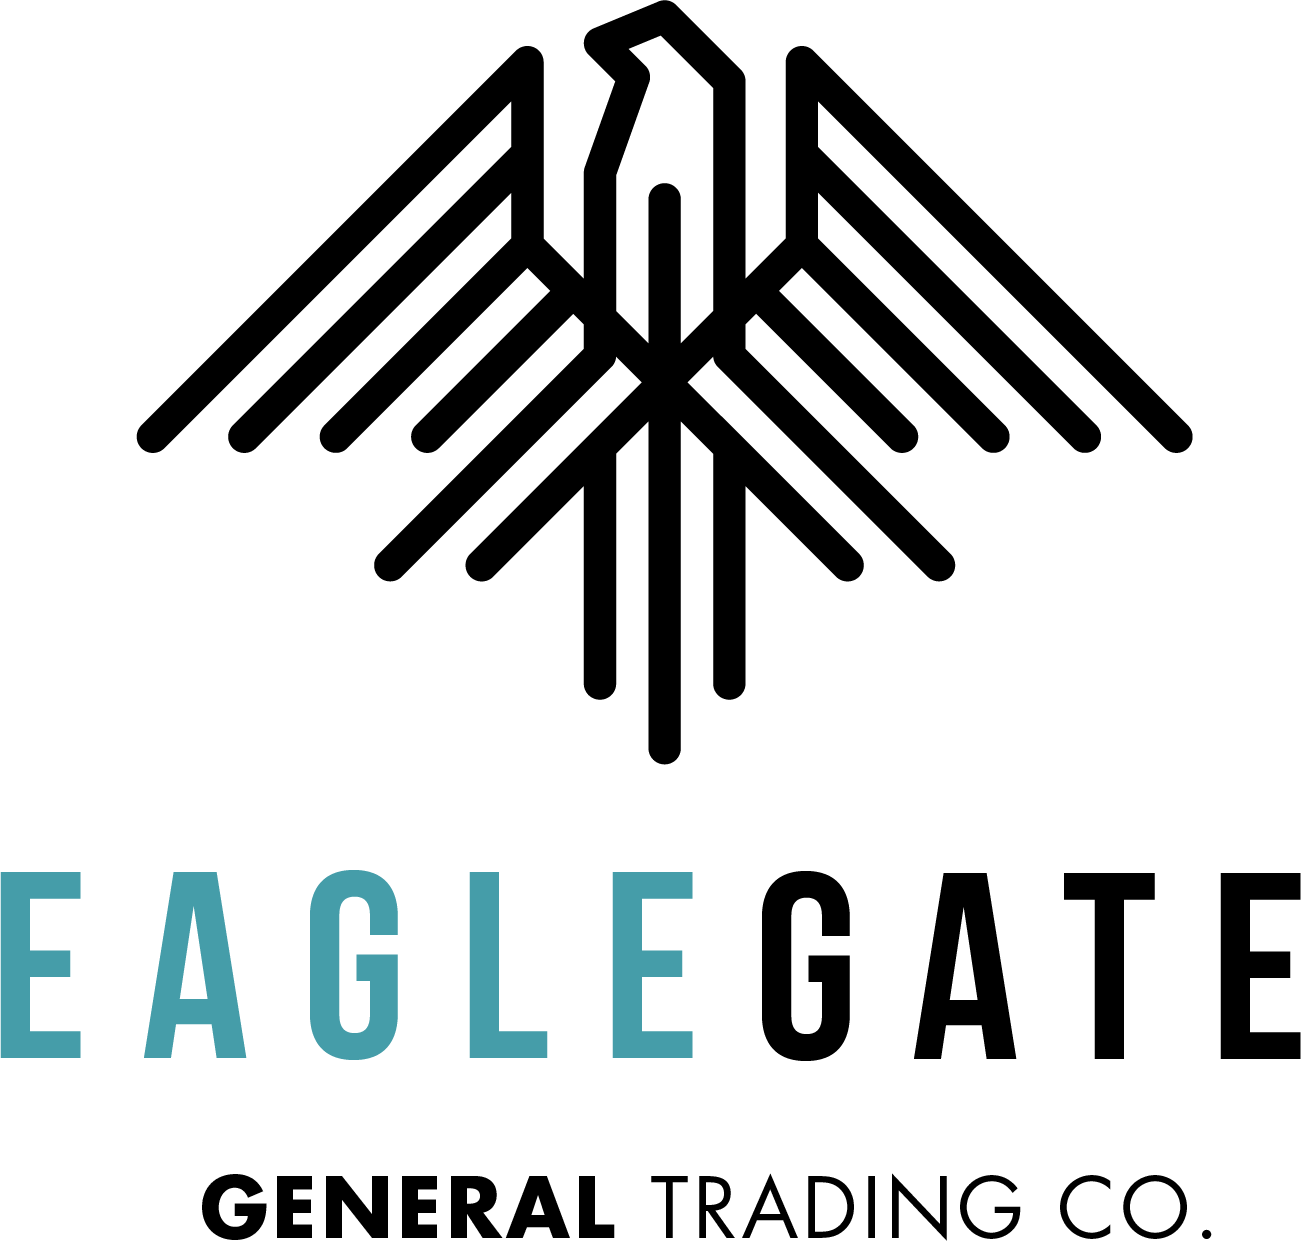 Eagle Gate